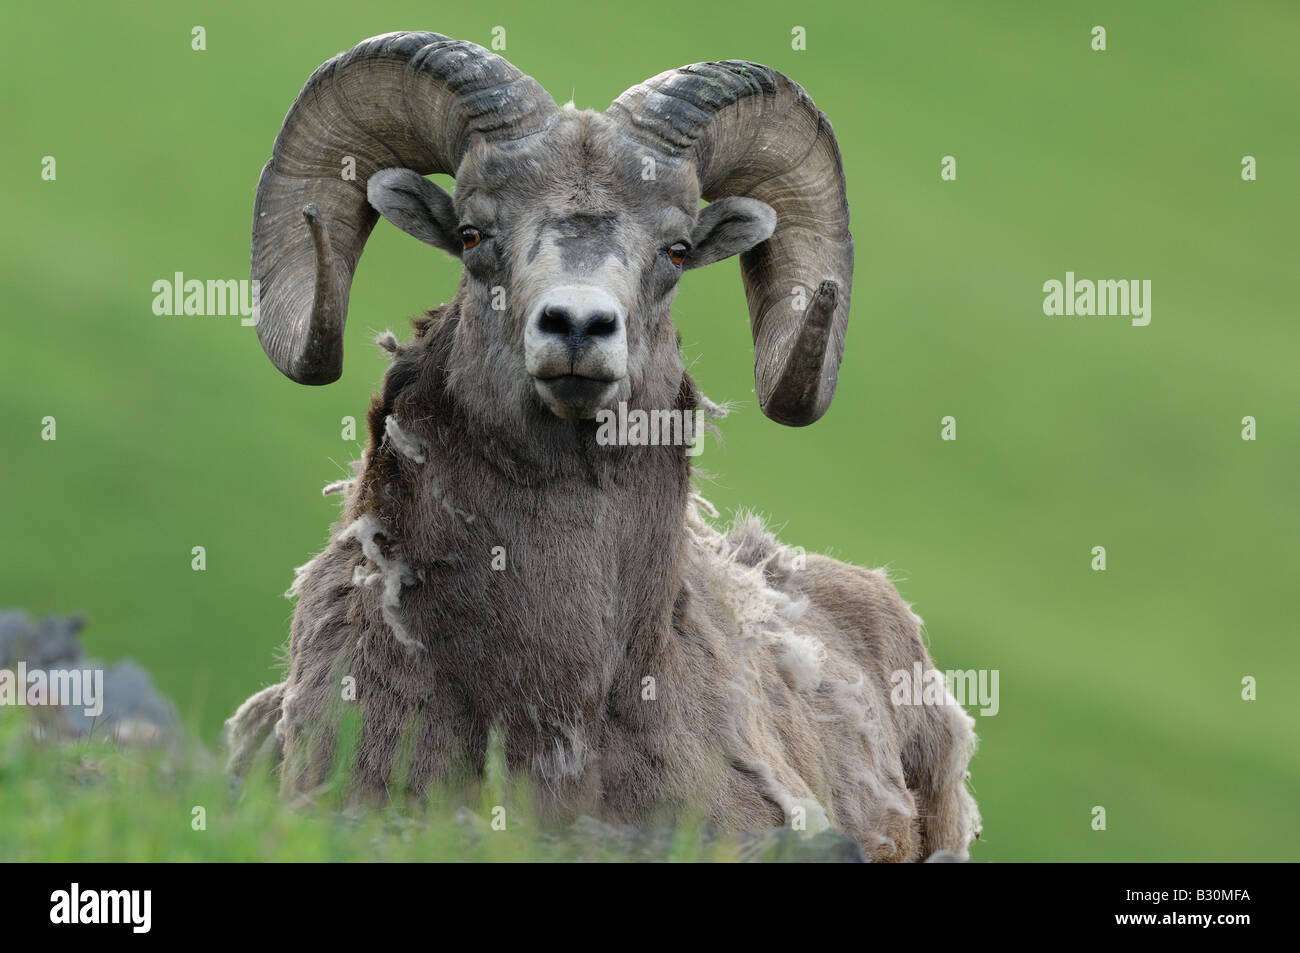 A Rocky mountain bighorn sheep Stock Photo